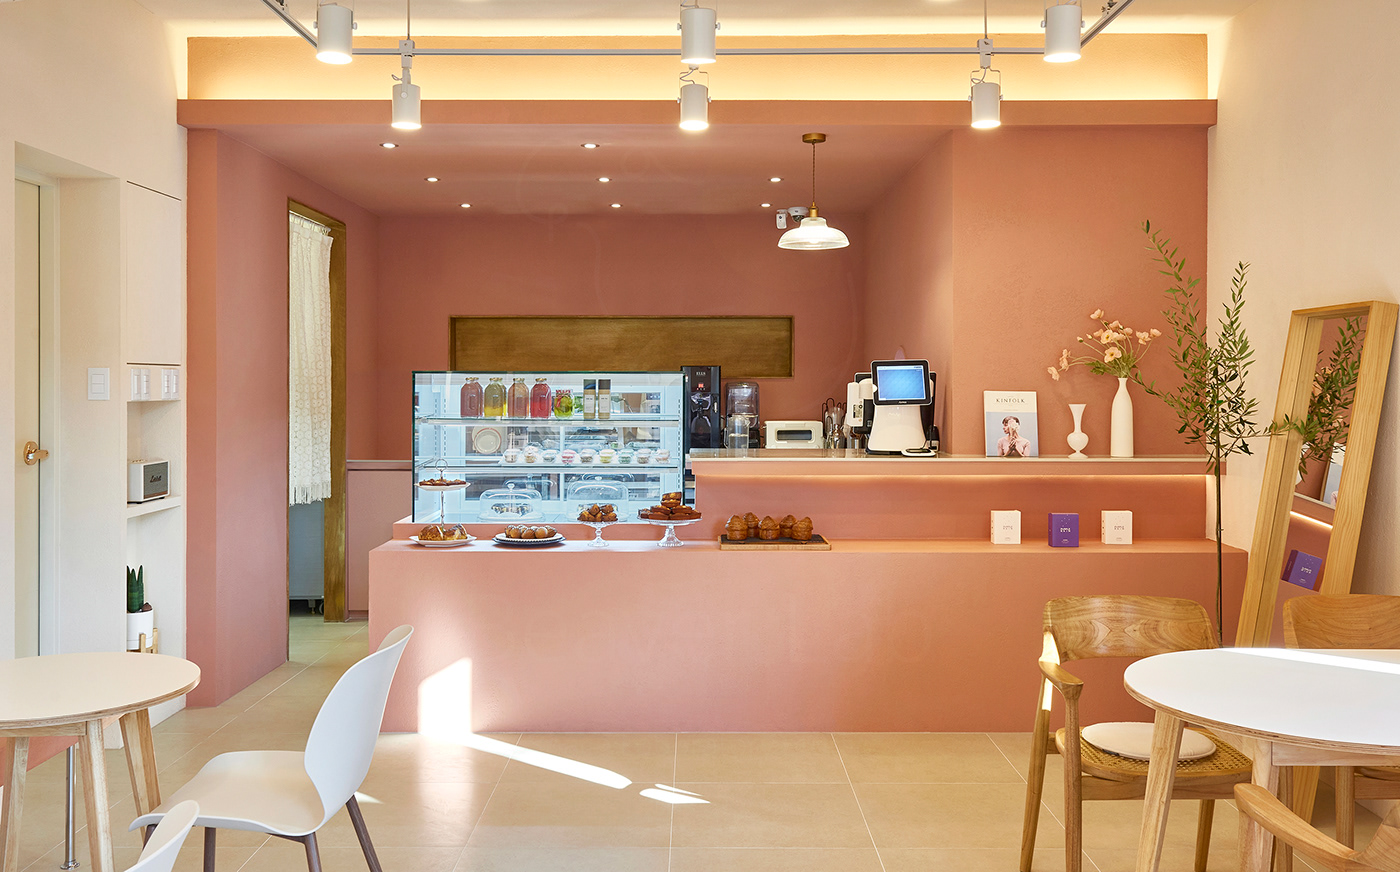 cafe cafedesign   cafeinterior coral coralinterior K-Design K-interior logodesign pink PINKINTERIOR